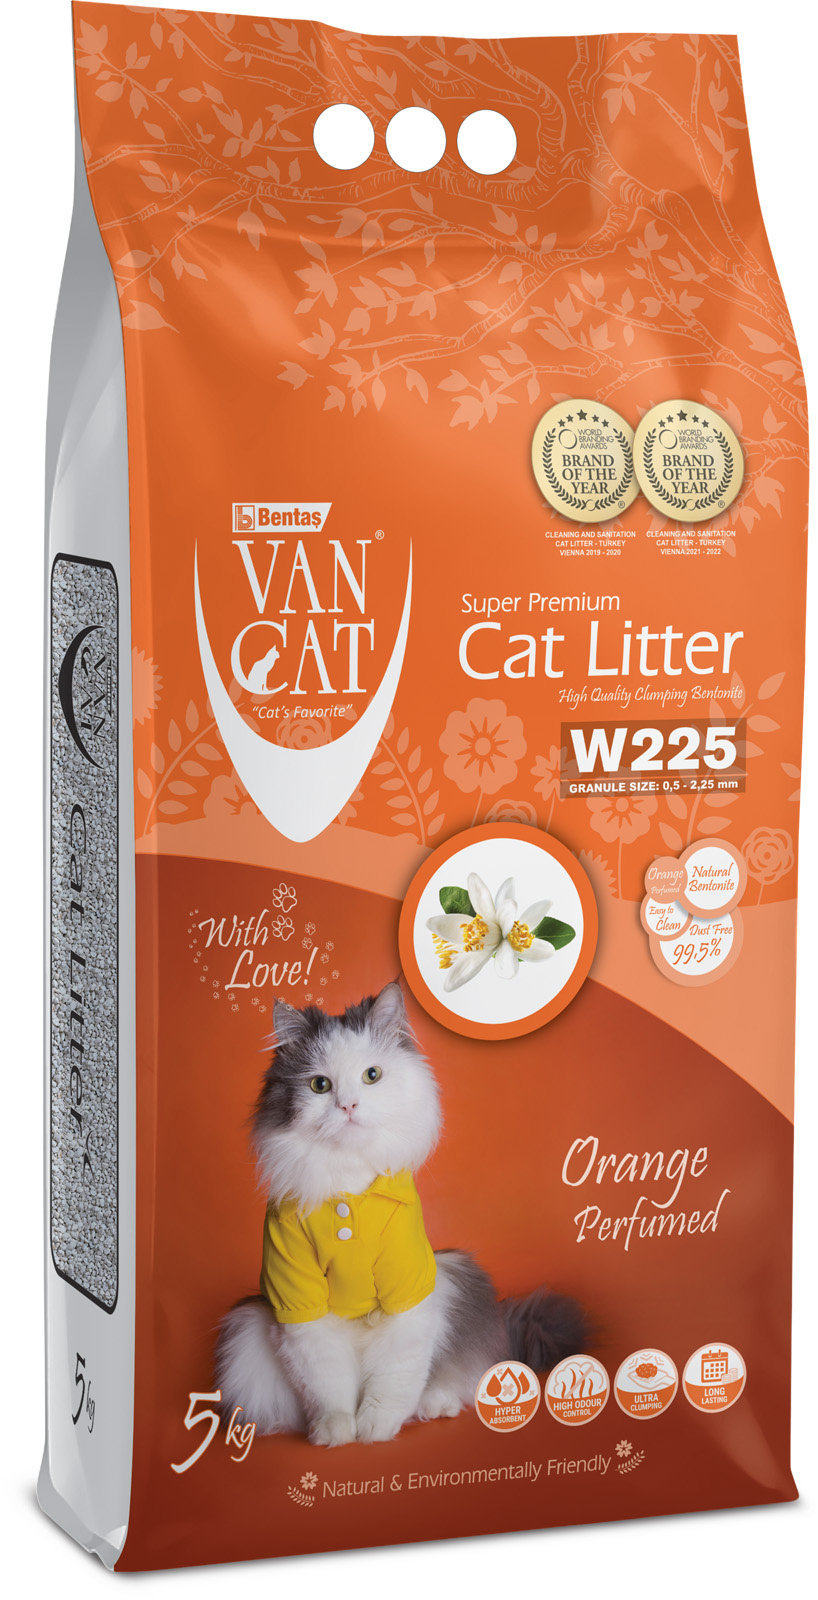 Van Cat Van Cat комкующийся наполнитель без пыли с ароматом апельсина, пакет (5 кг) van cat van cat комкующийся наполнитель 100% натуральный без пыли пакет 15 кг